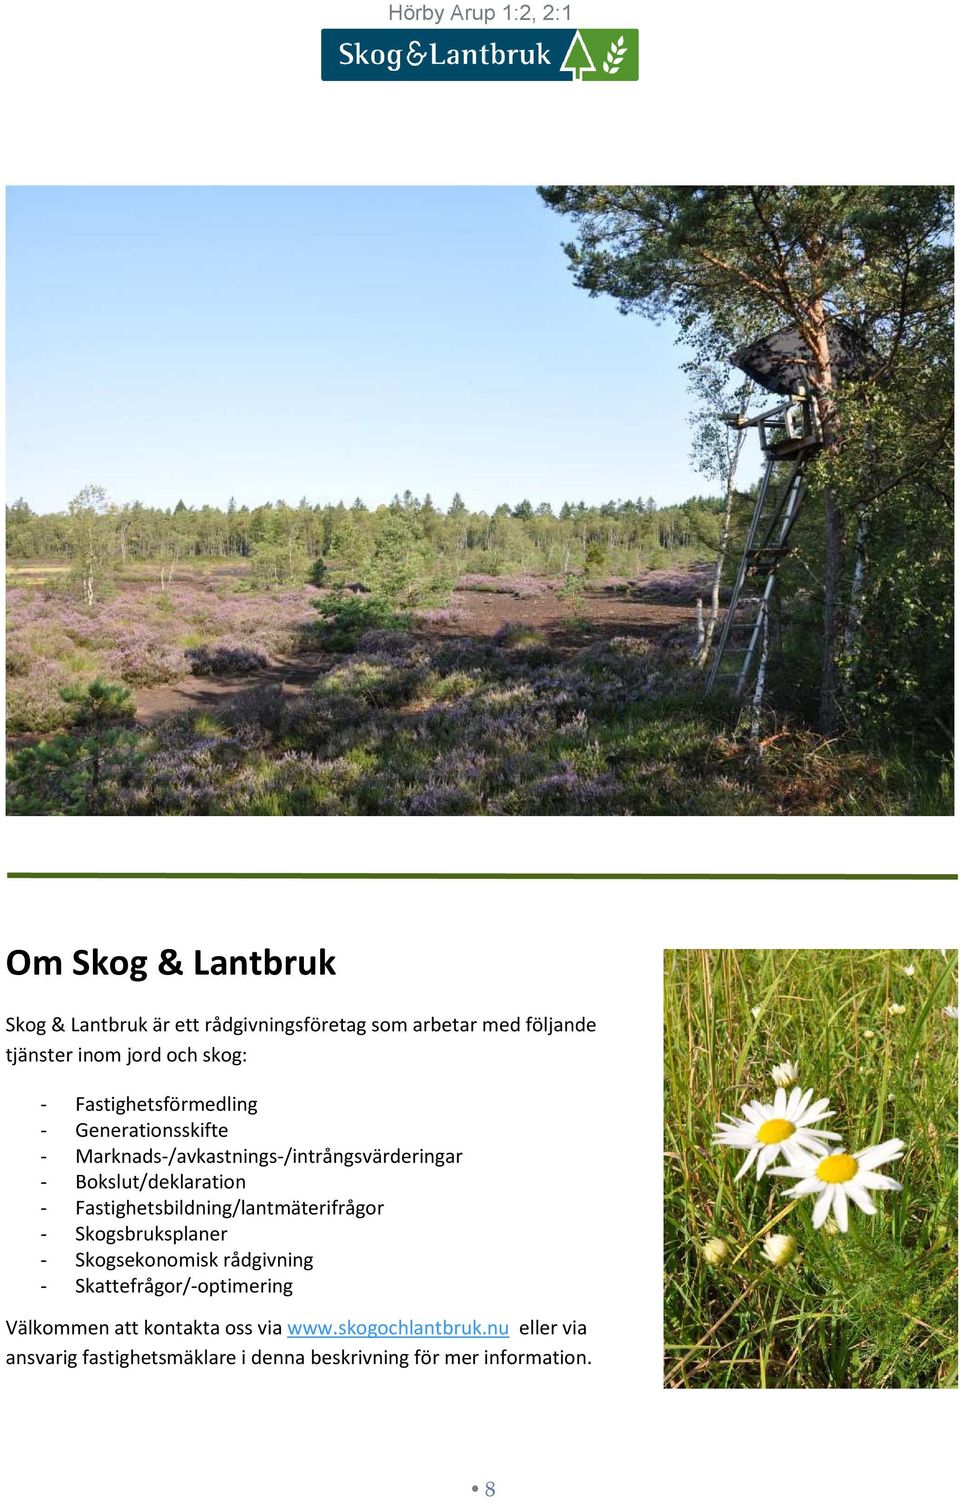 Bokslut/deklaration - Fastighetsbildning/lantmäterifrågor - Skogsbruksplaner - Skogsekonomisk rådgivning -